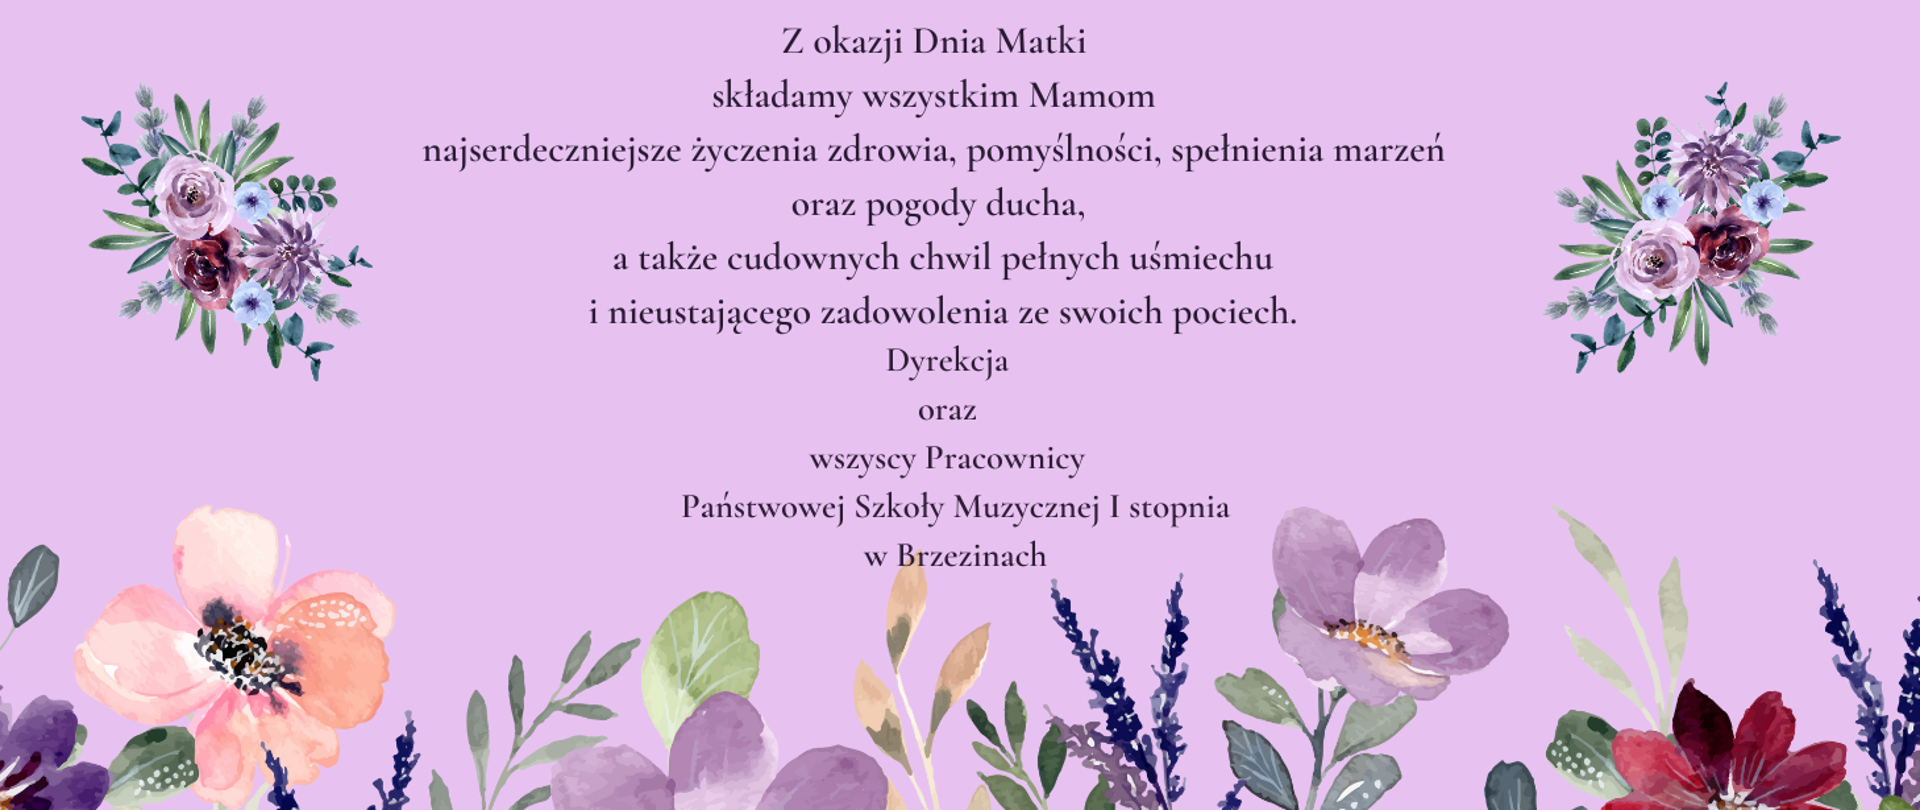 Grafika przedstawia na fioletowym tle z kwiatami życzenia z okazji Dnia Matki.